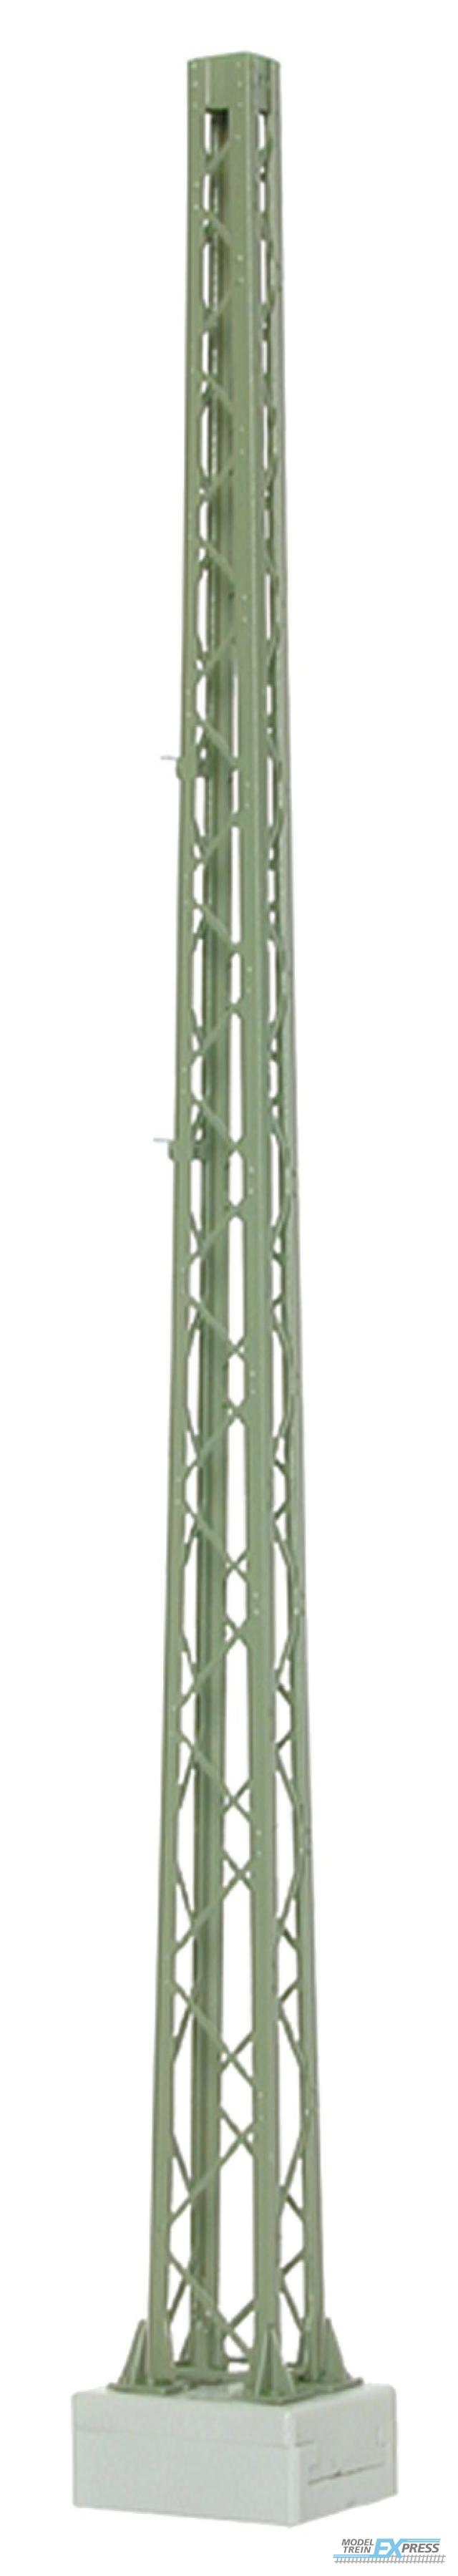 Viessmann 4215 TT Turmmast, Höhe: 10,9 cm